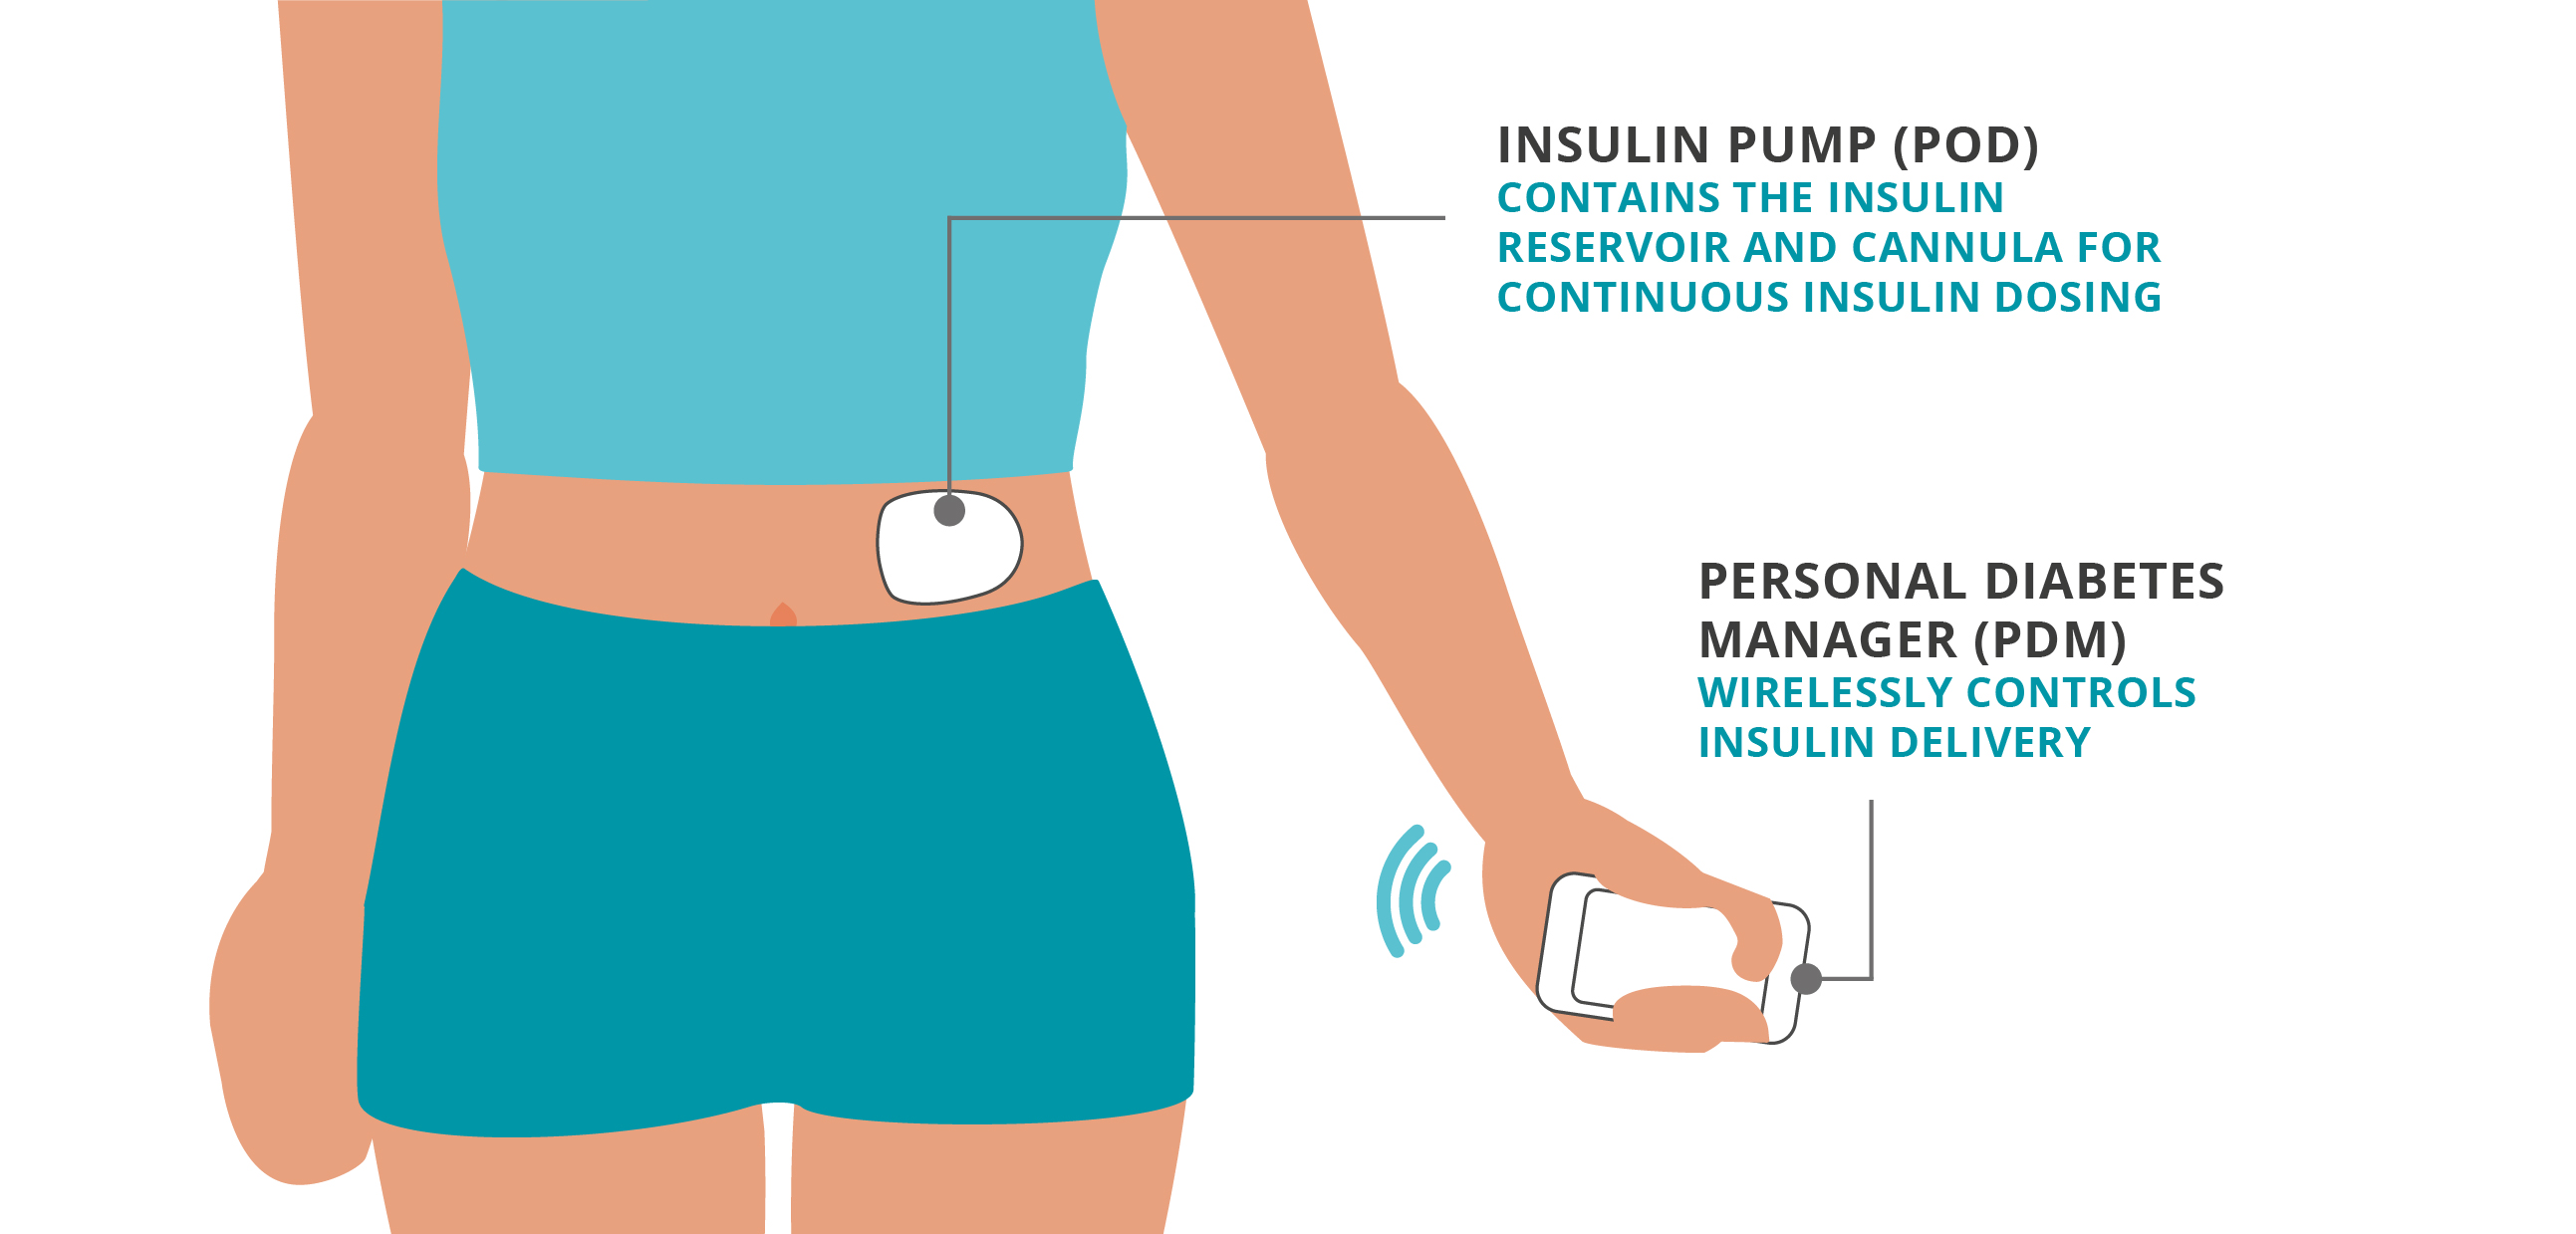 What is an insulin pump? 